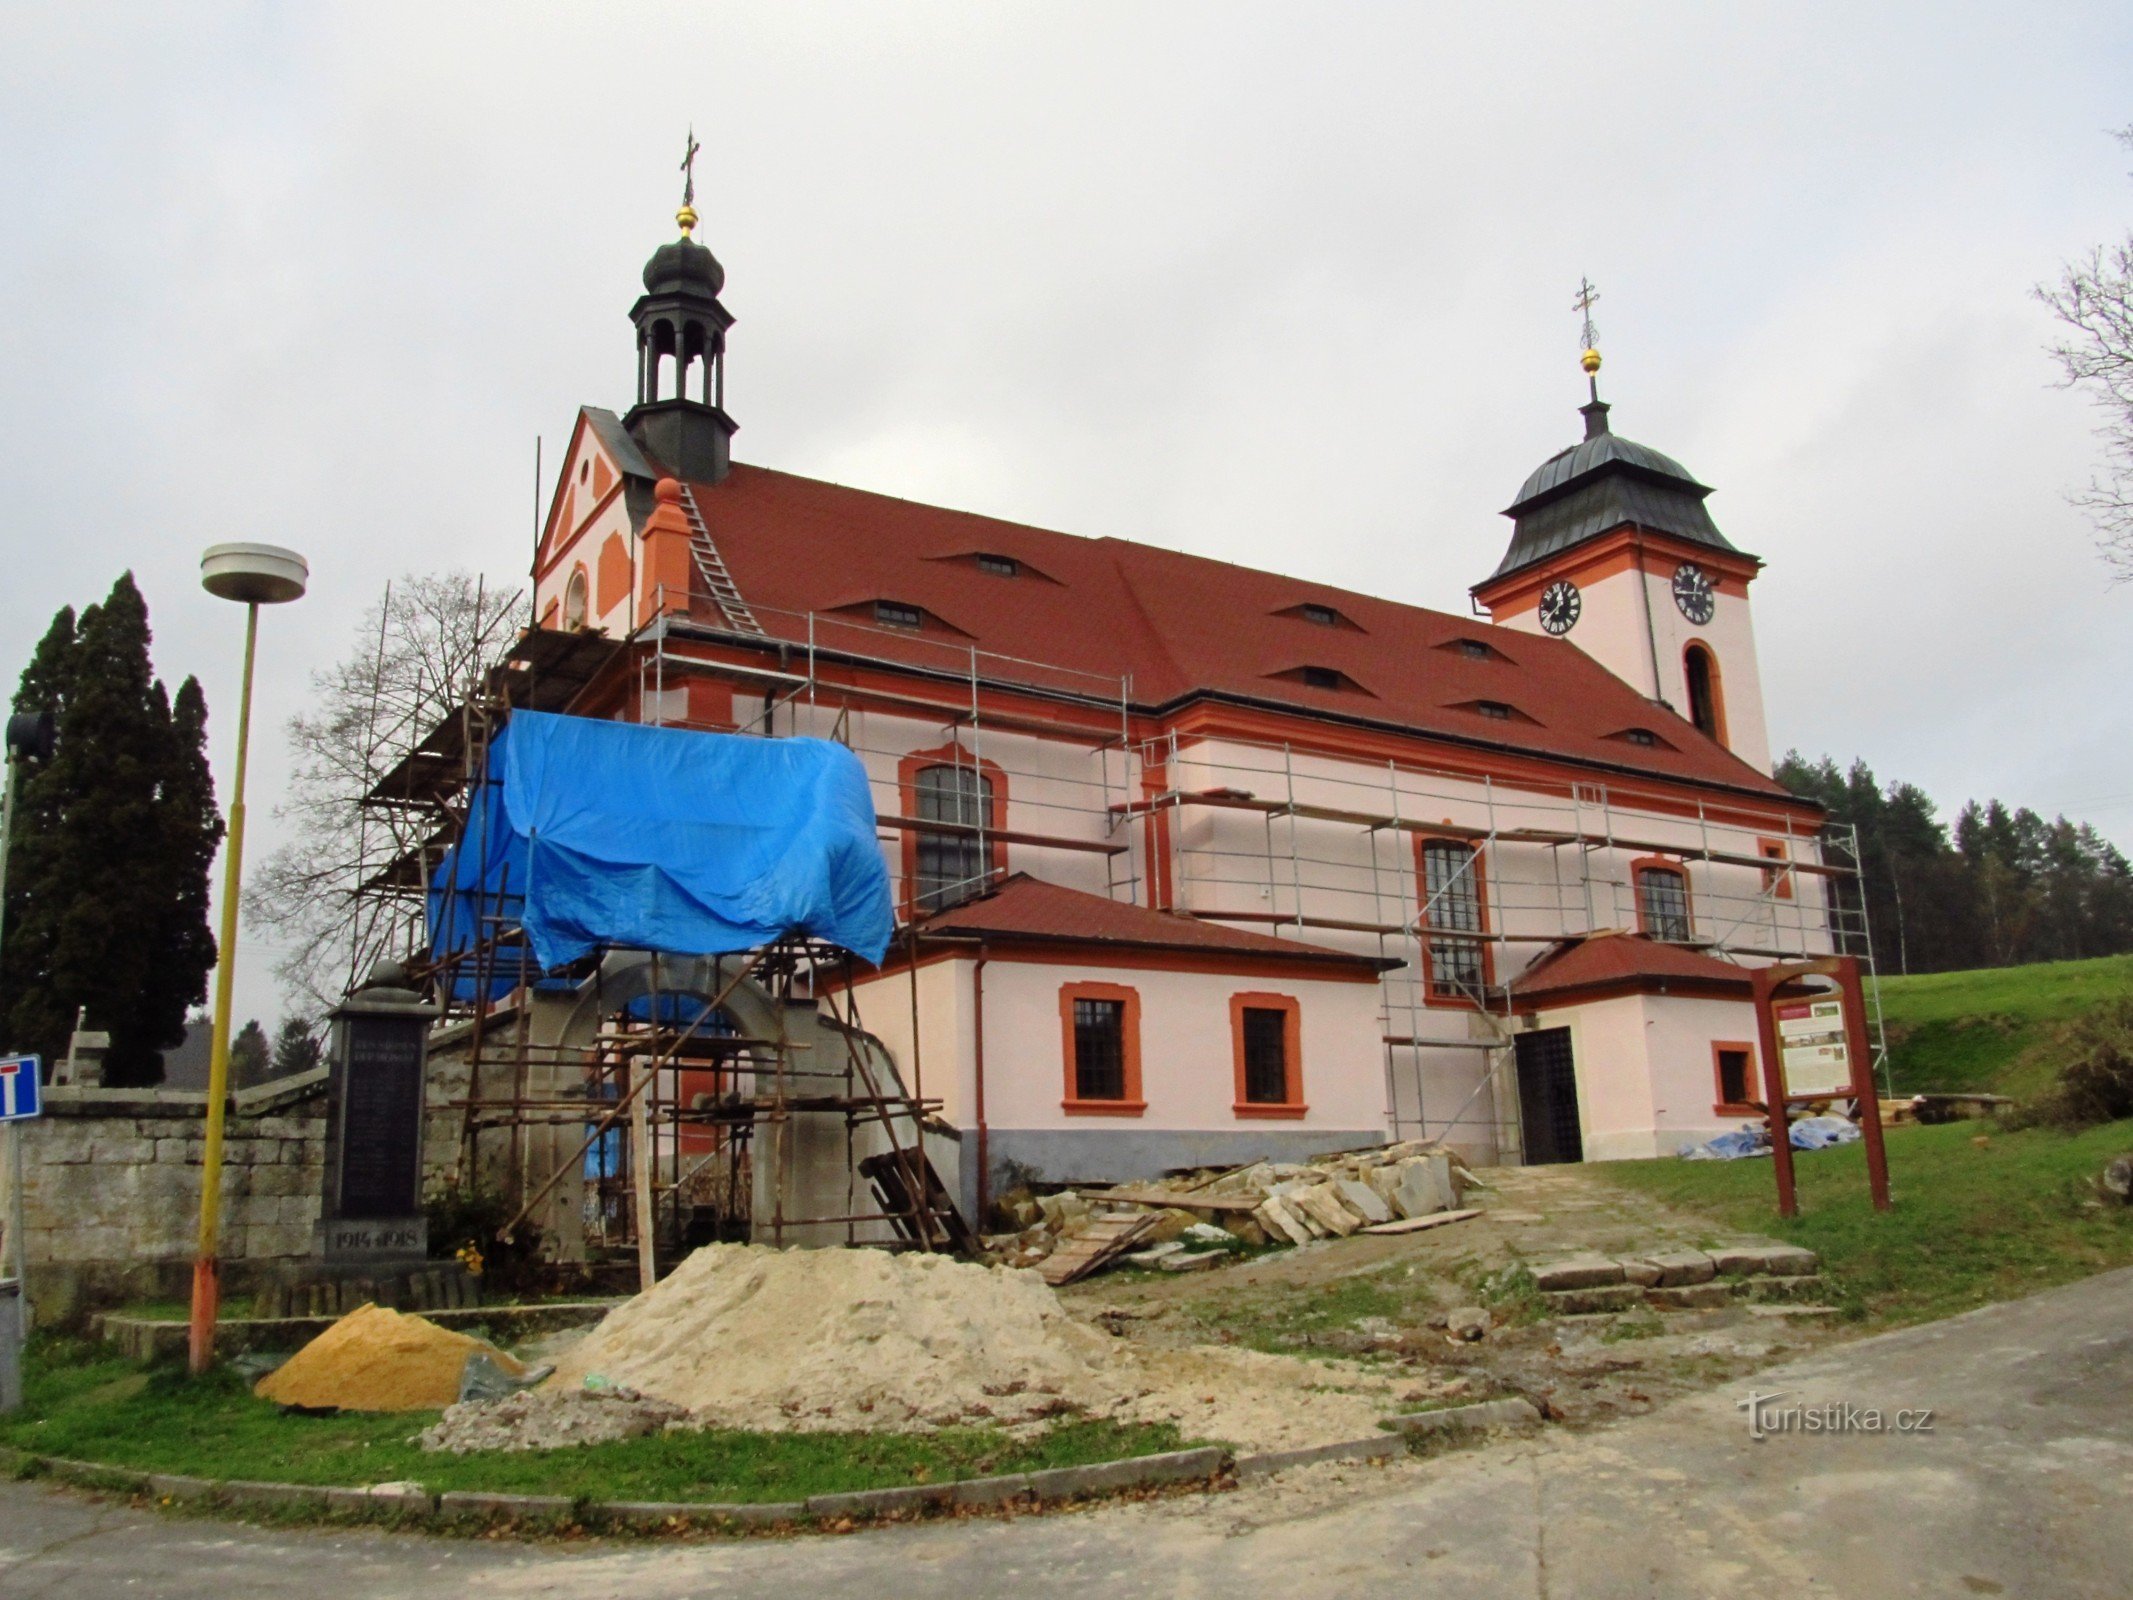 Nepomuck-Jetřichovice 的圣约翰教堂